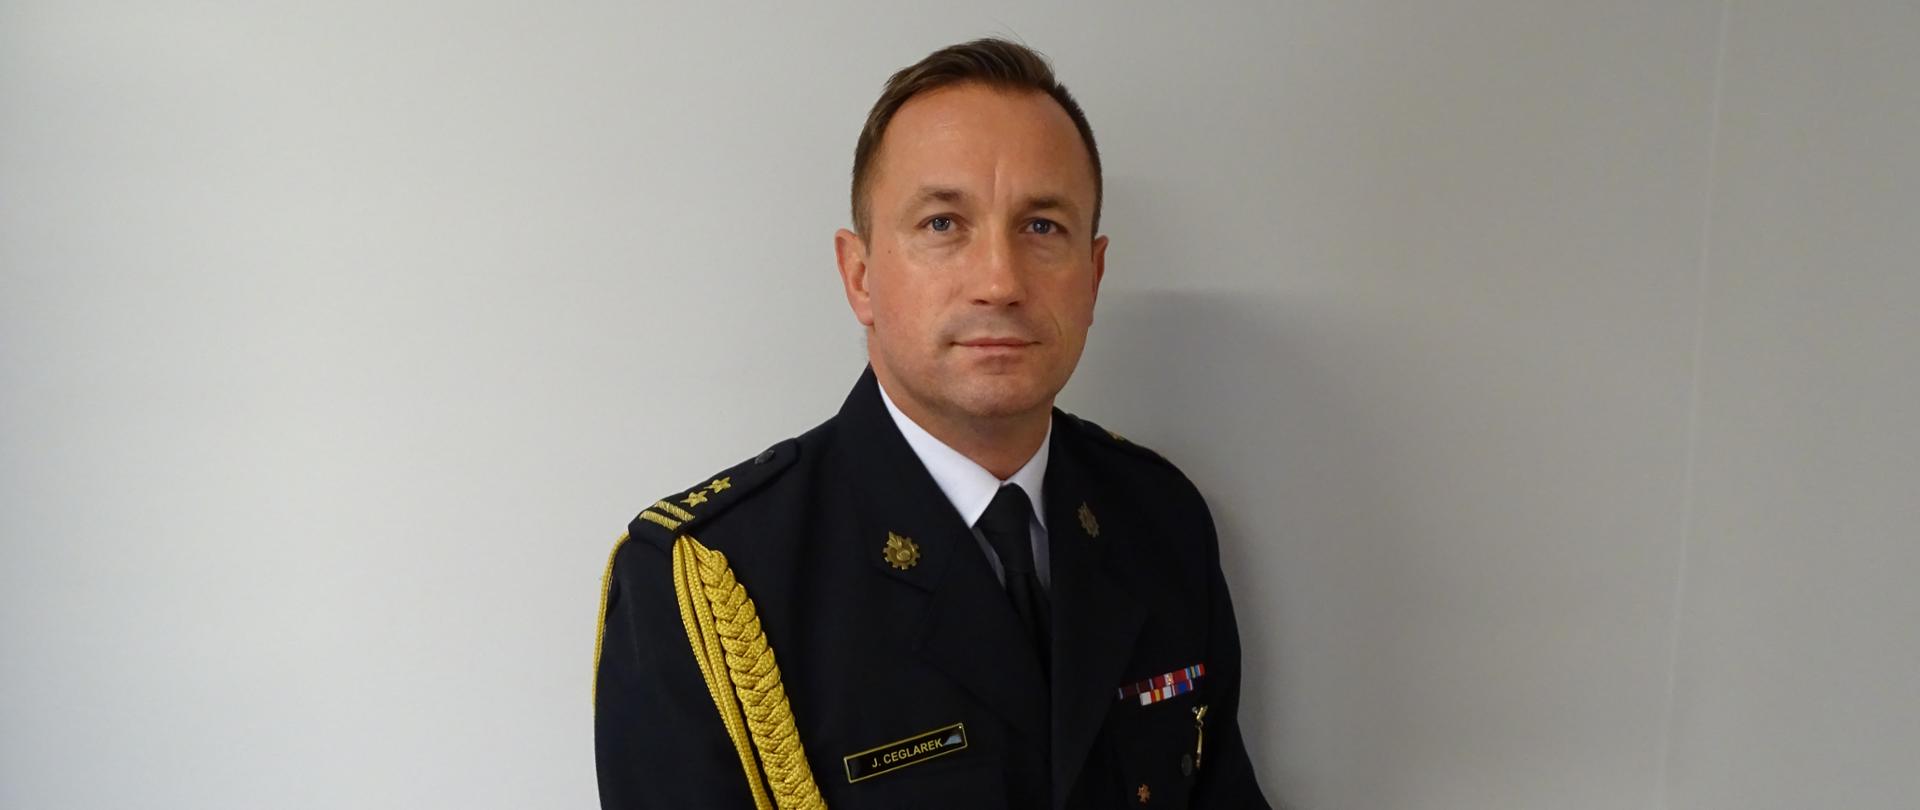 Zdjęcie portretowe komendanta bryg. Jarosława Ceglarka na jasnym tle w mundurze galowym.